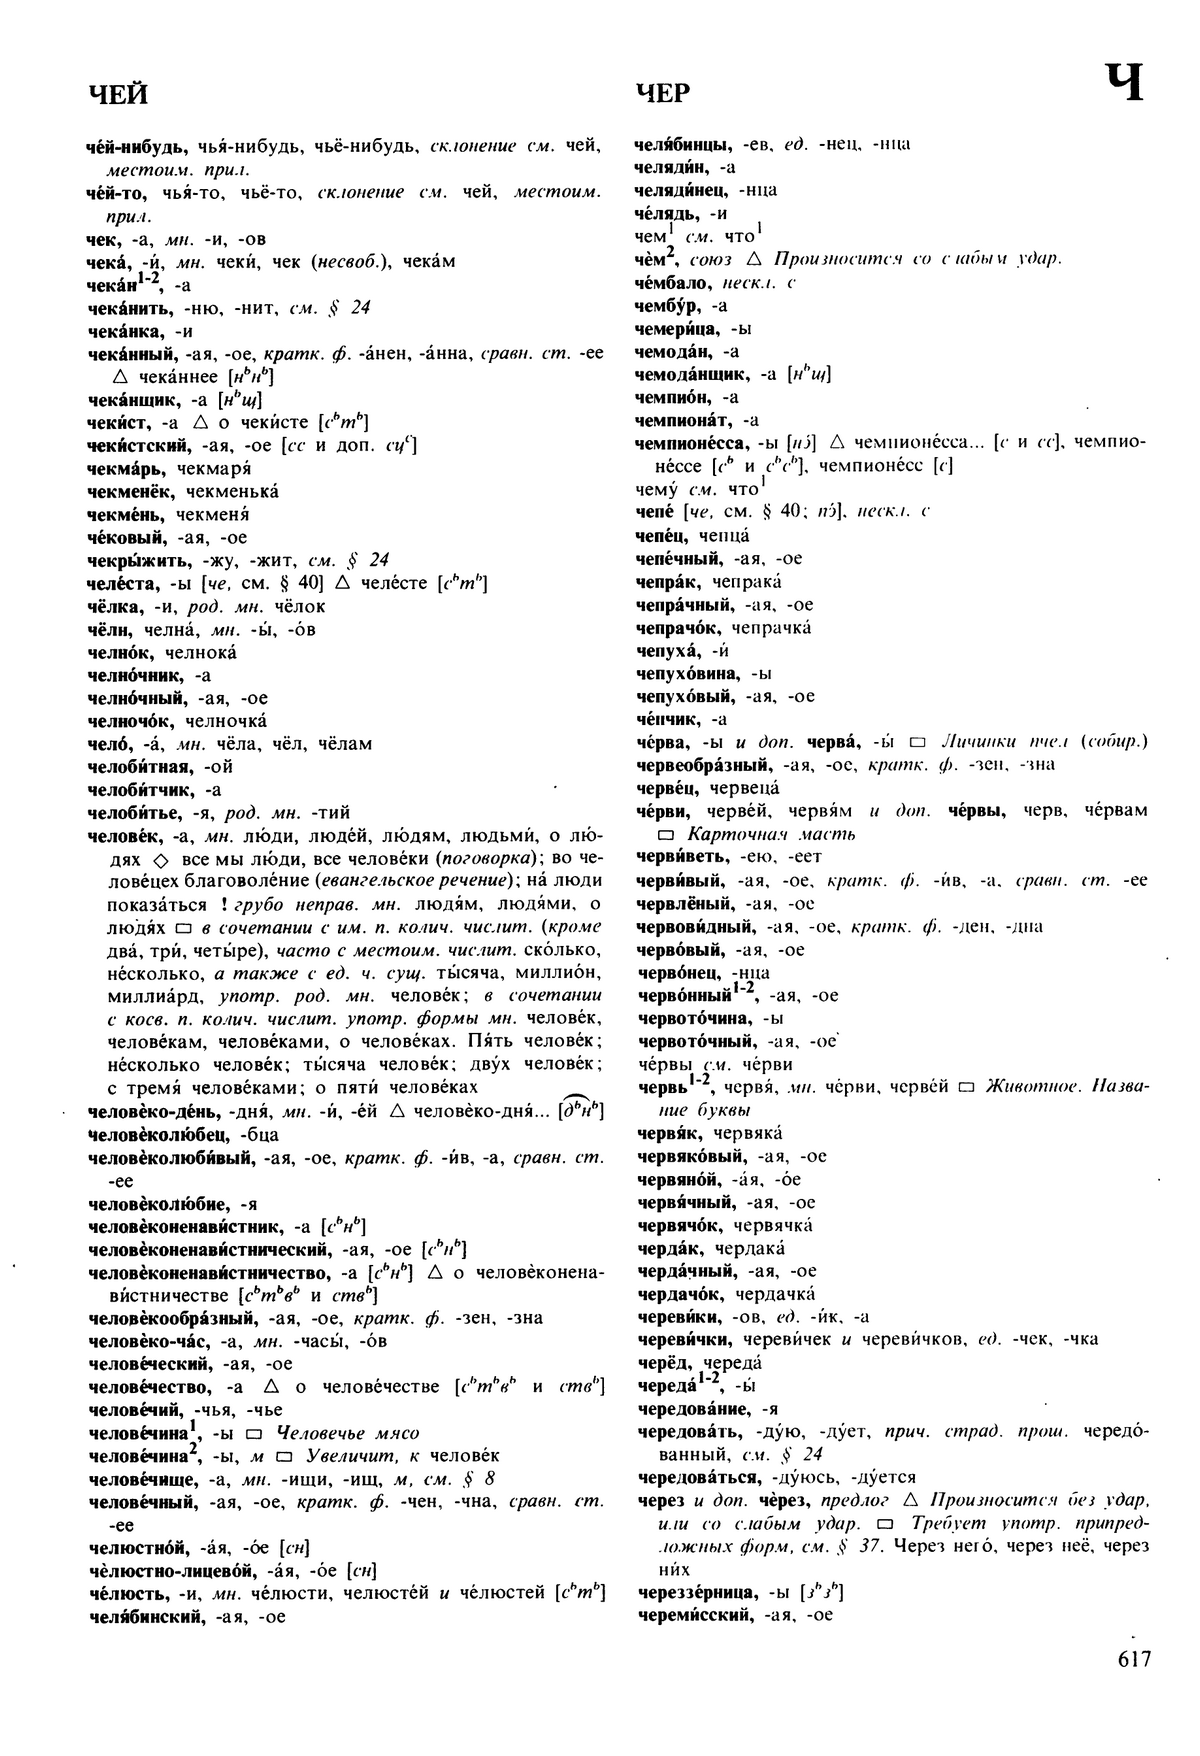 Фотокопия pdf / скан страницы 617 орфоэпического словаря под редакцией Аванесова (5 издание, 1989 год)